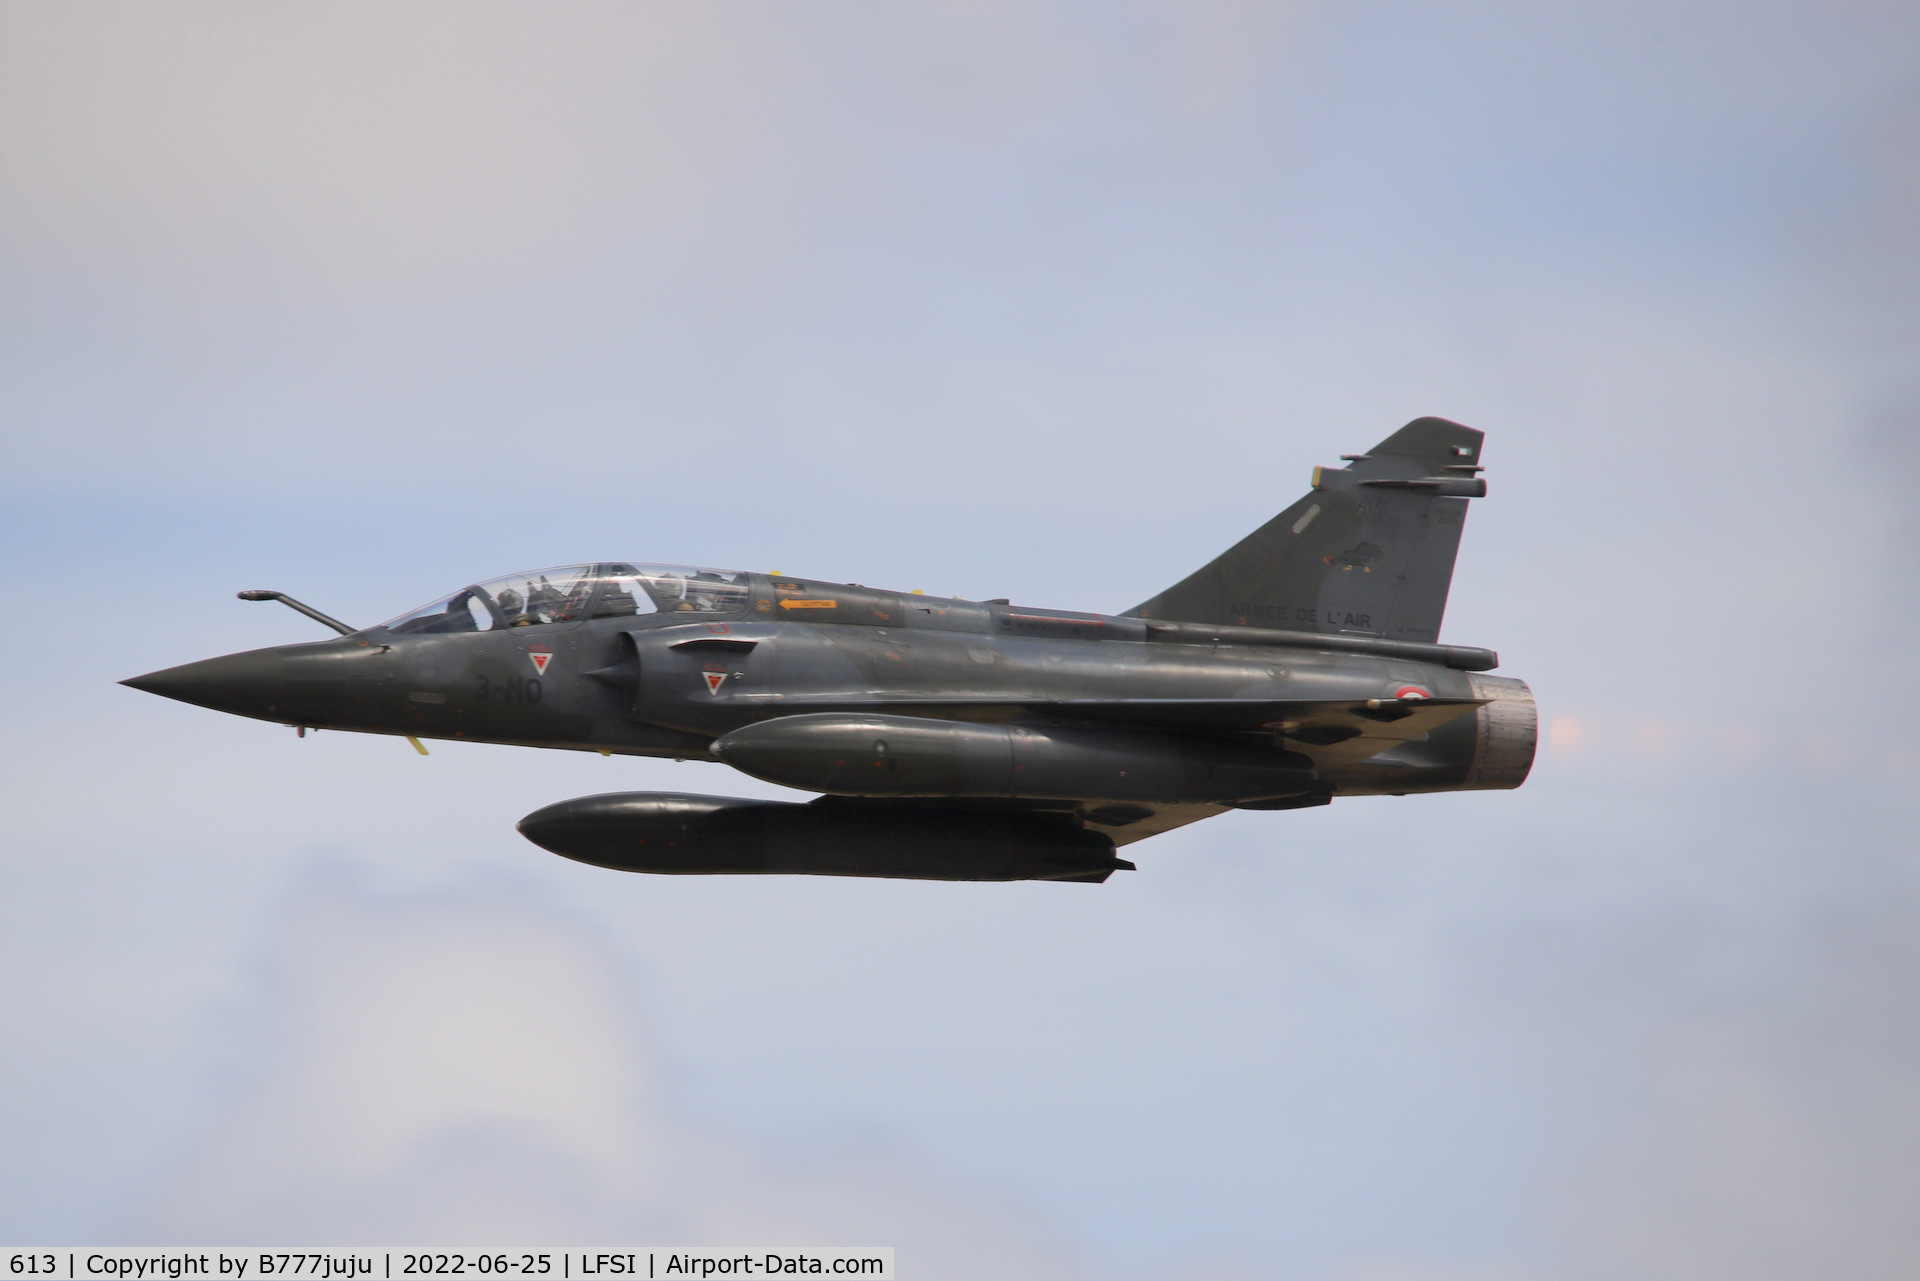 613, Dassault Mirage 2000D C/N 410, during Saint-Dizier airshow 2022